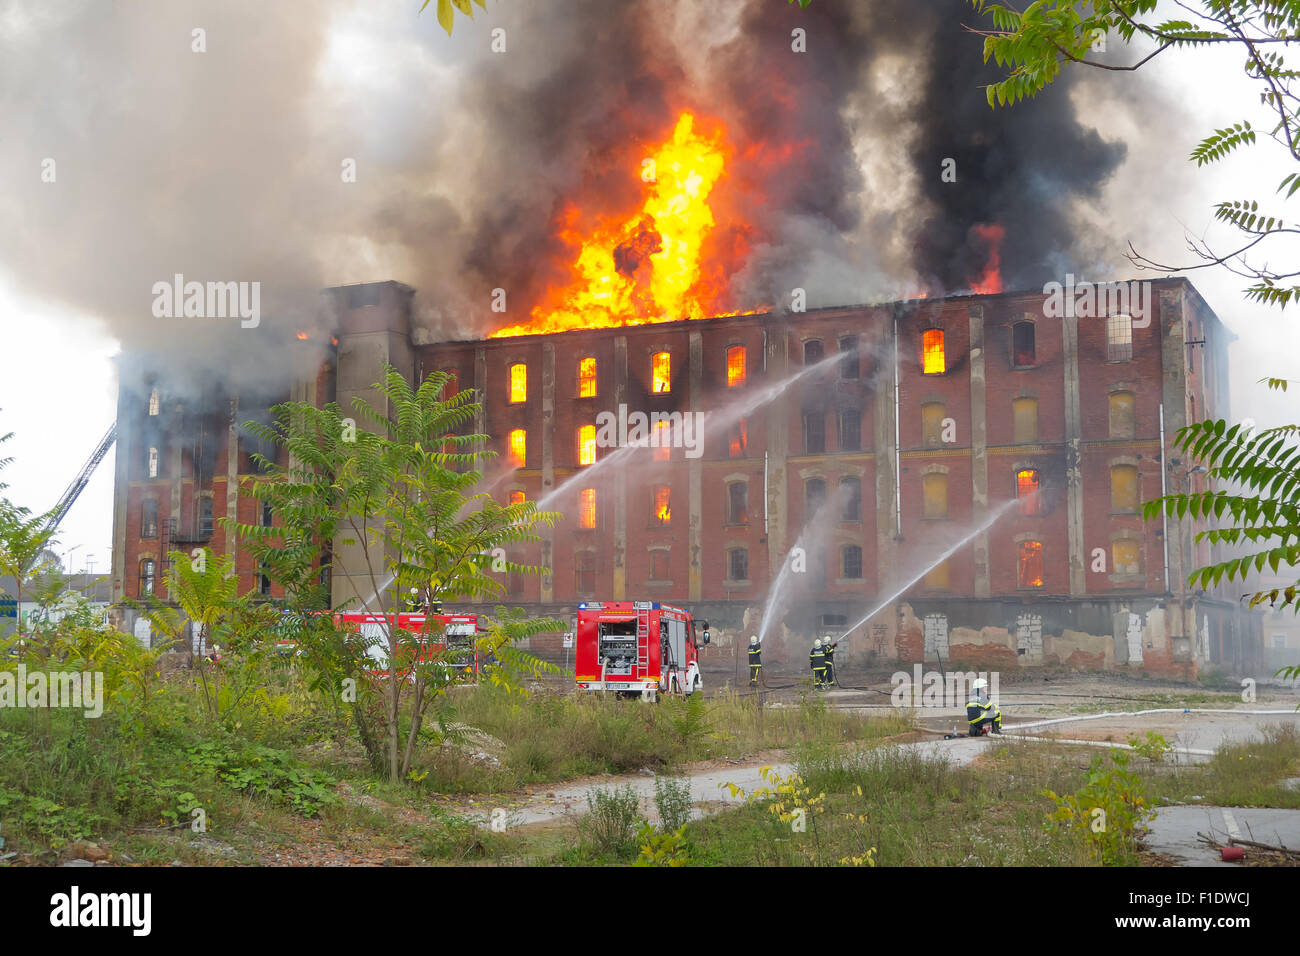 Vigili del fuoco combattono grandi fire dello storico edificio industriale Rakusev Mlin il 6 ottobre 2014 in Celje, Slovenia Foto Stock